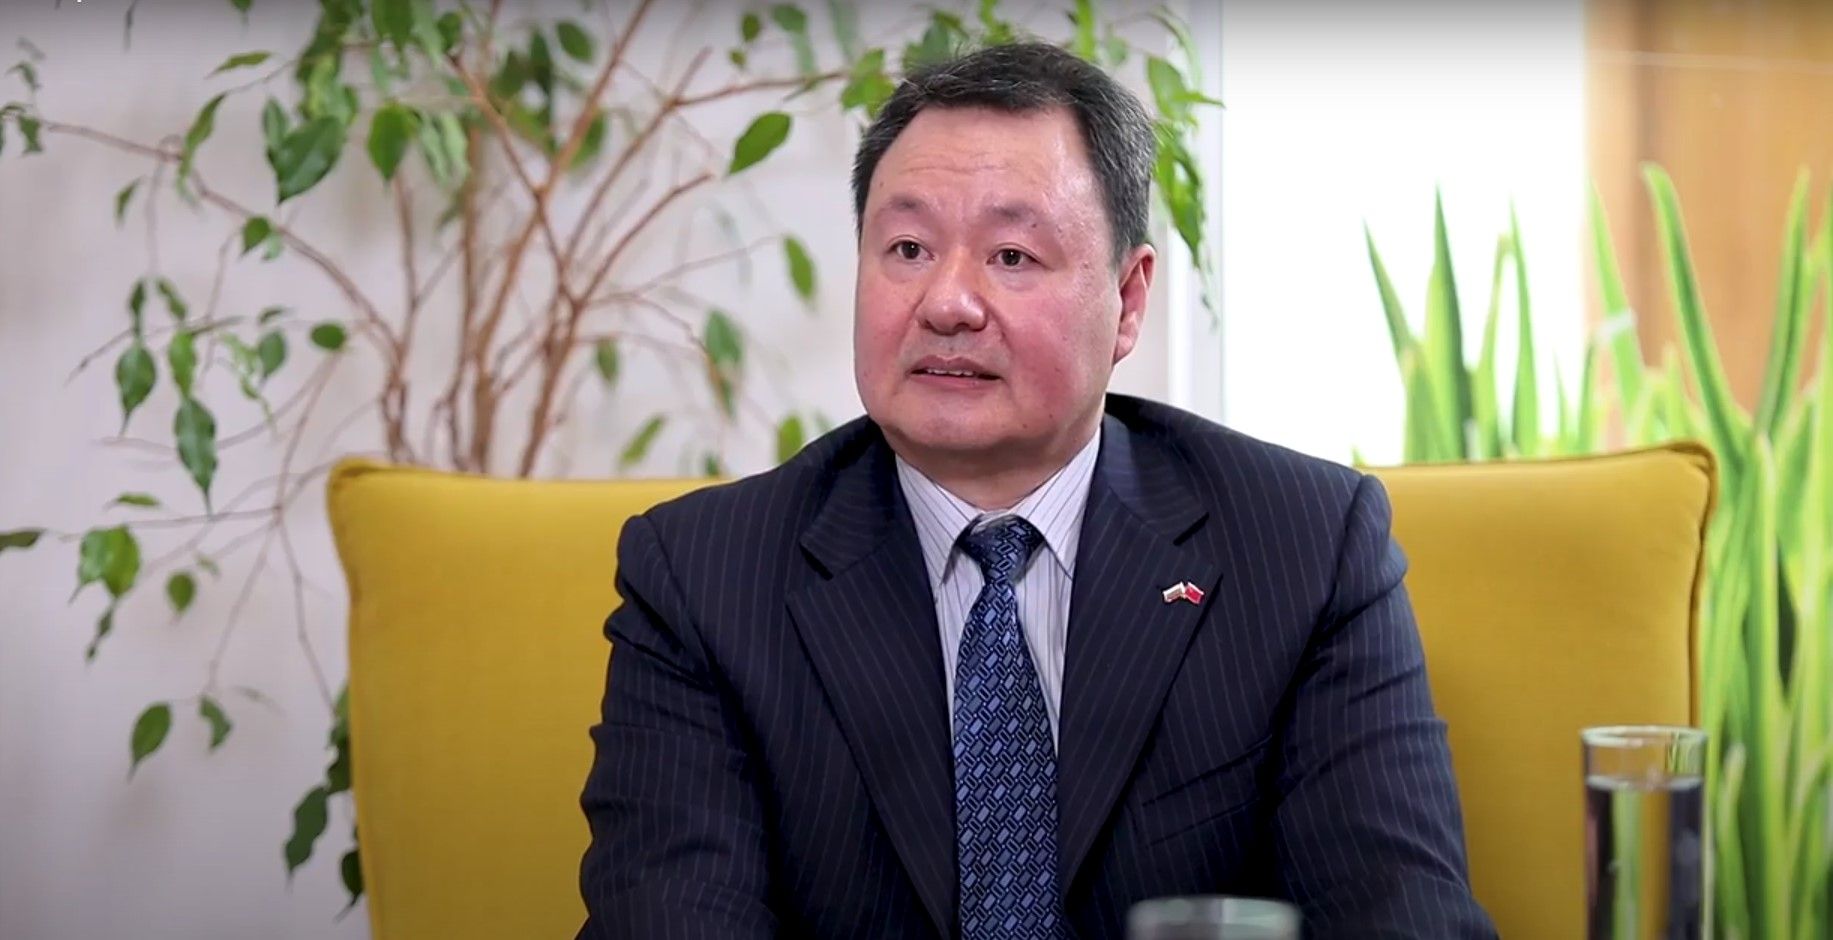  Политическият консултант към Н.П. посланика на КНР - Йен Дзиенцюн 